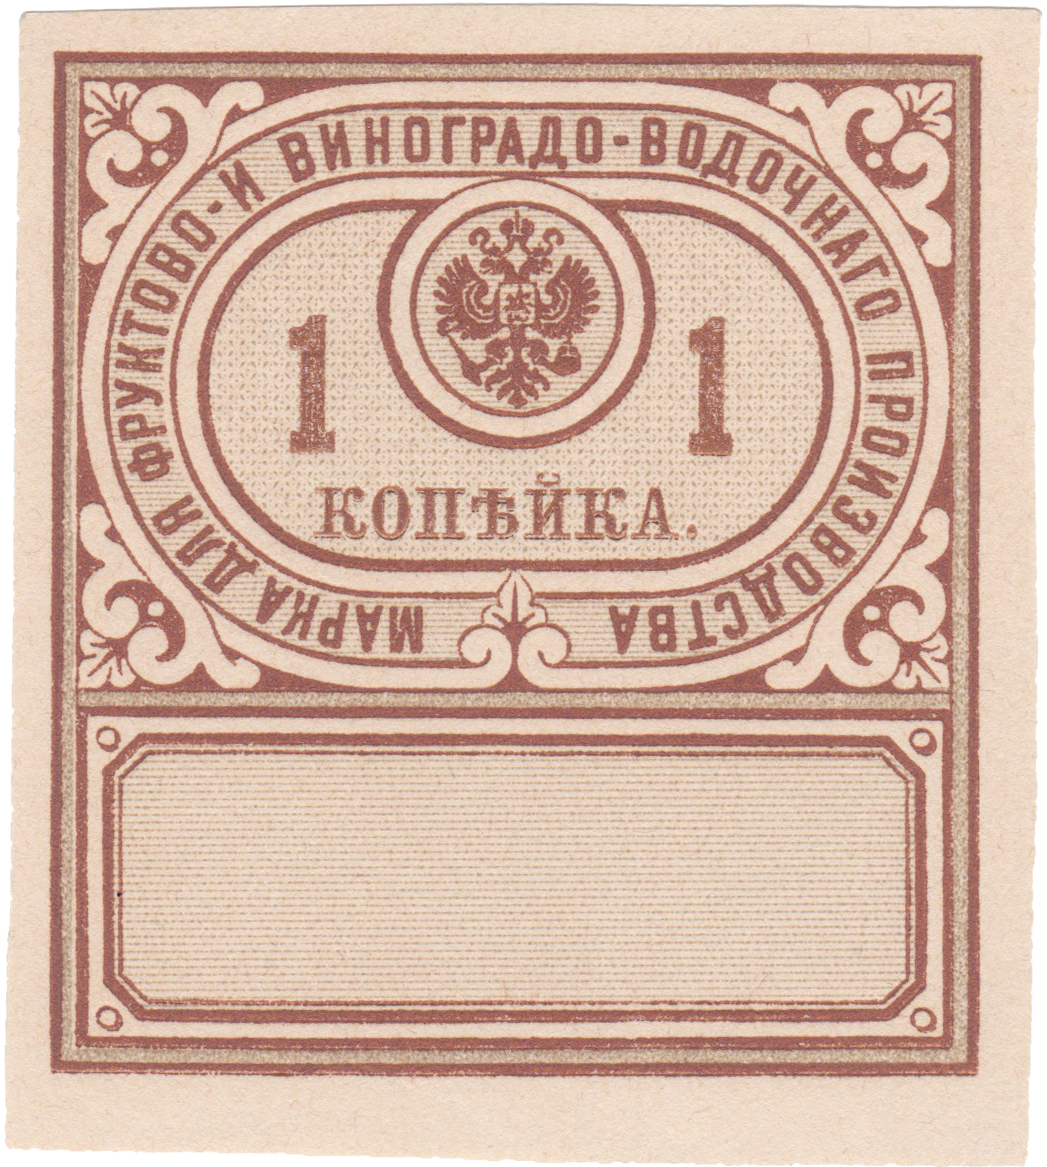 Акцизная марка фруктово- и виноградо - водочного производства 1 Копейка 1892 год. Министерство финансов Российской империи